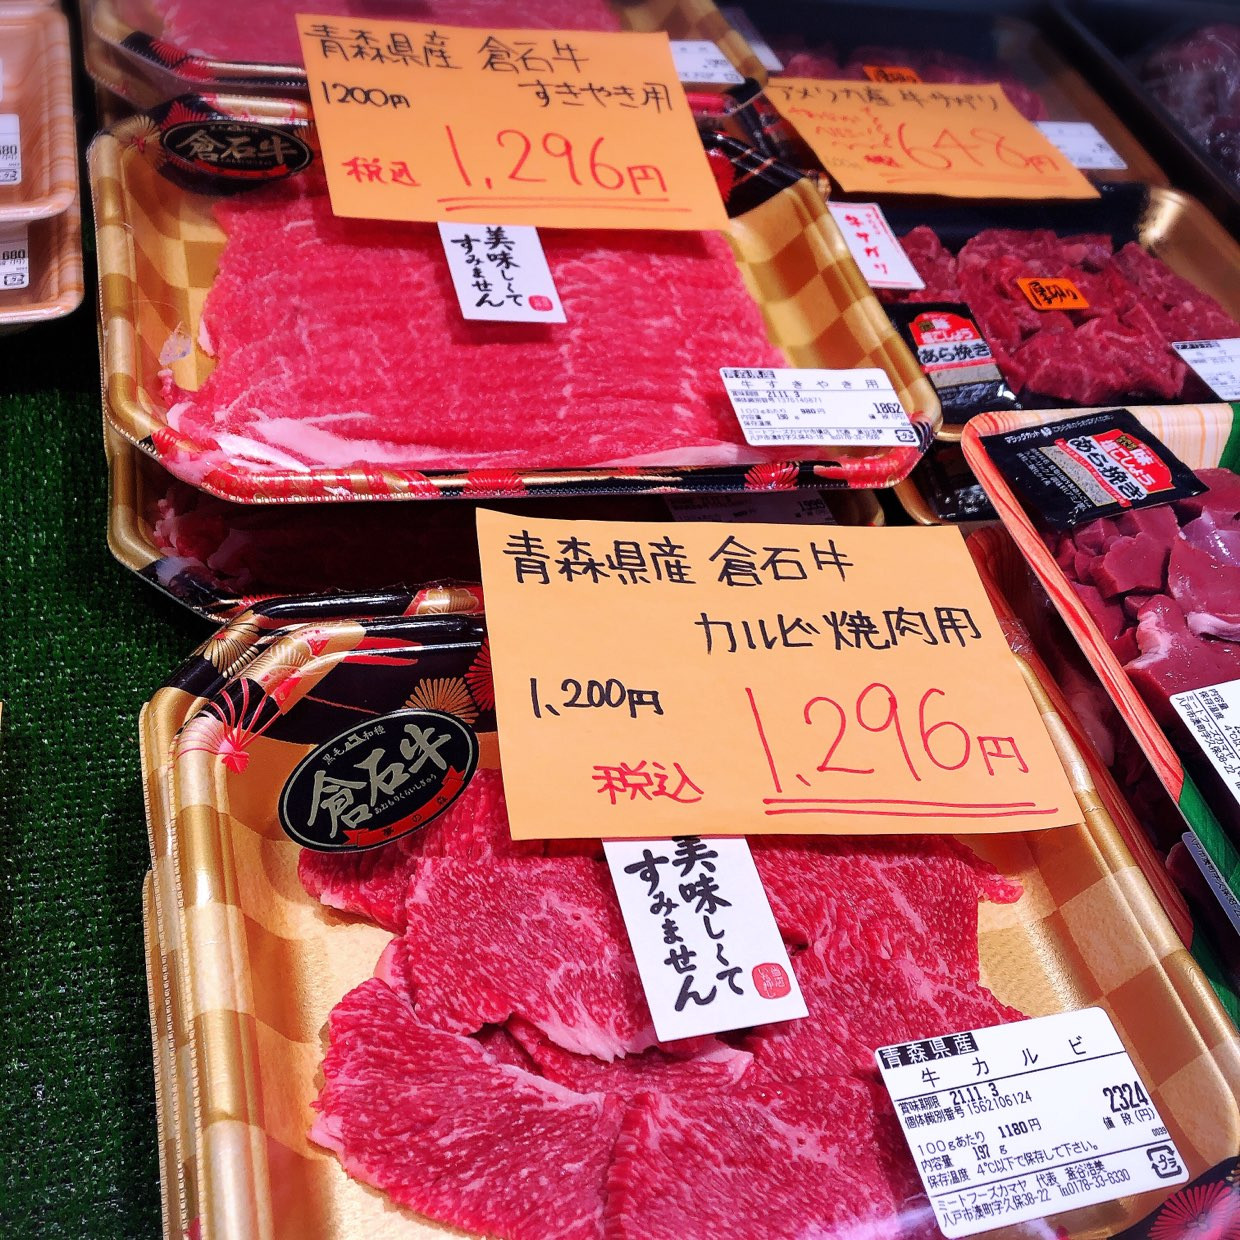 本日は青森県産倉石牛すき焼き、カルビがお買得です。